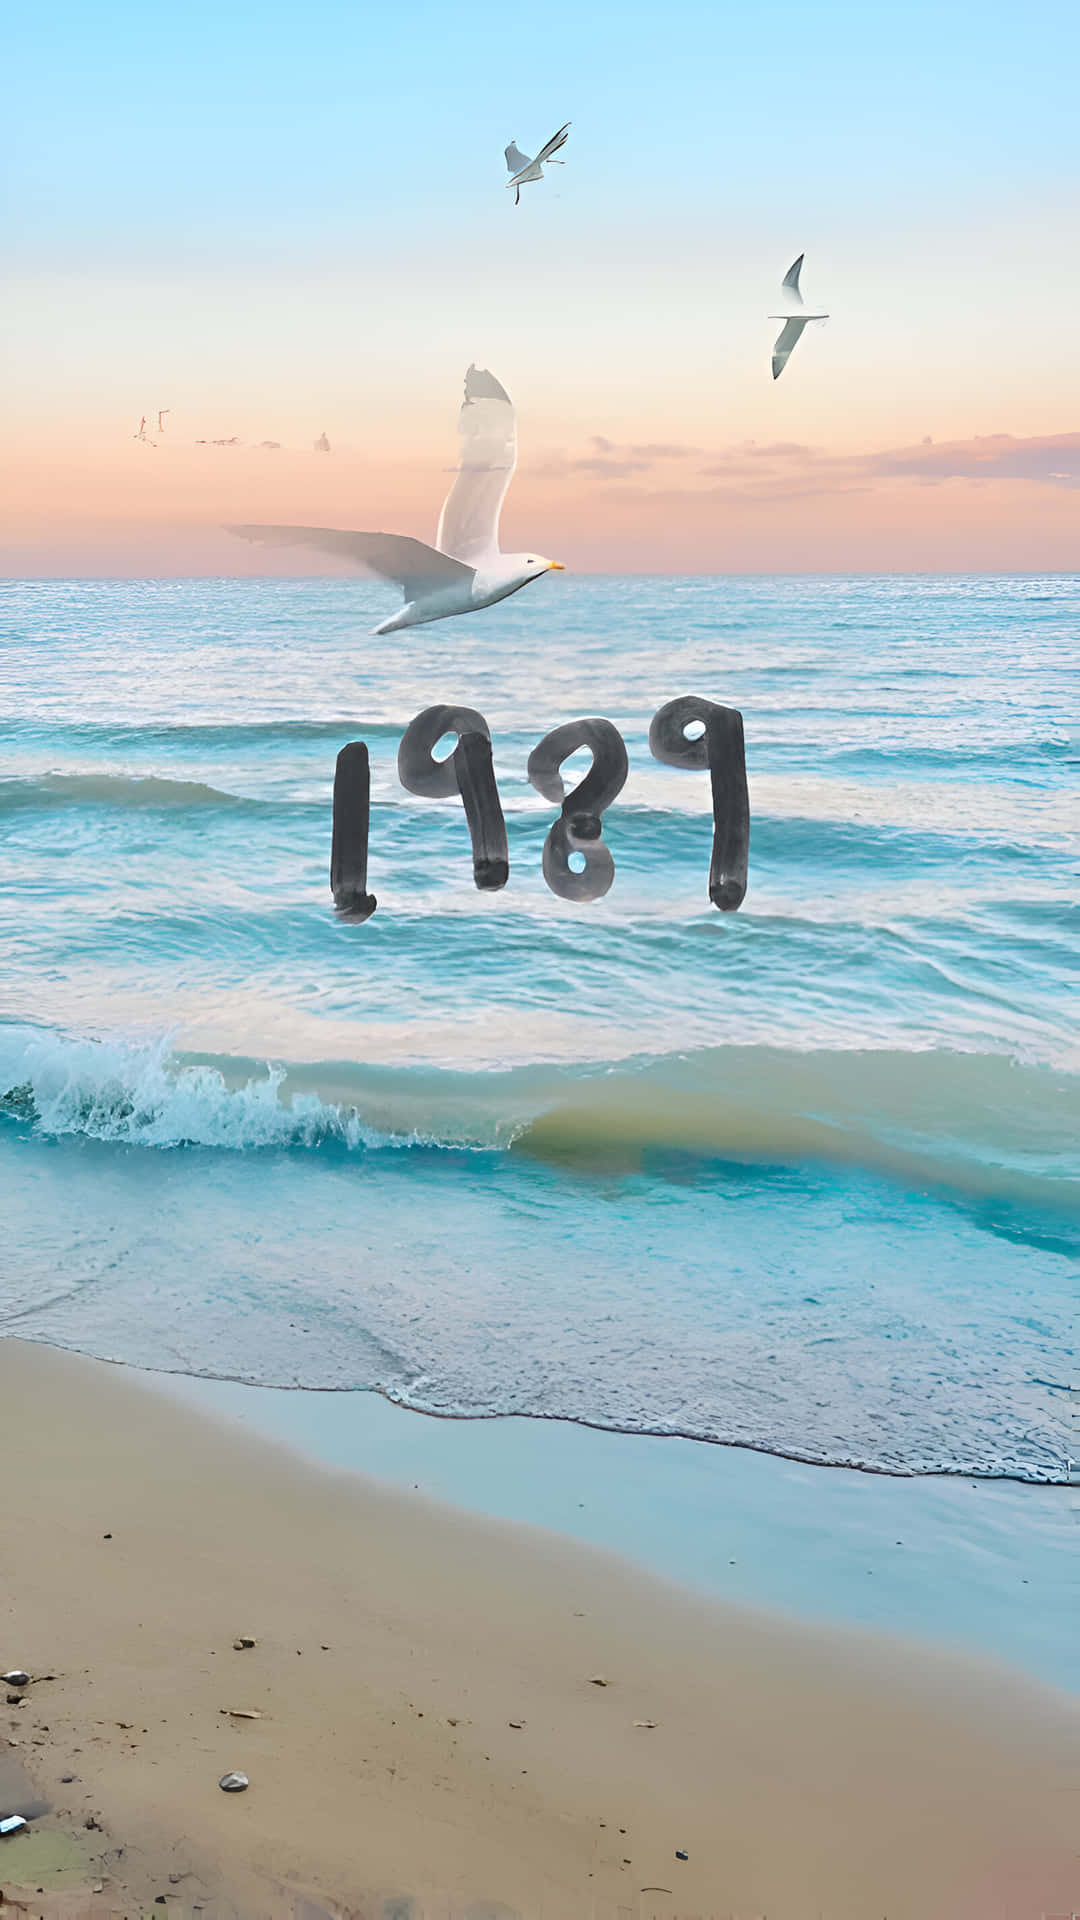 1989 Seagullsand Beach Wallpaper